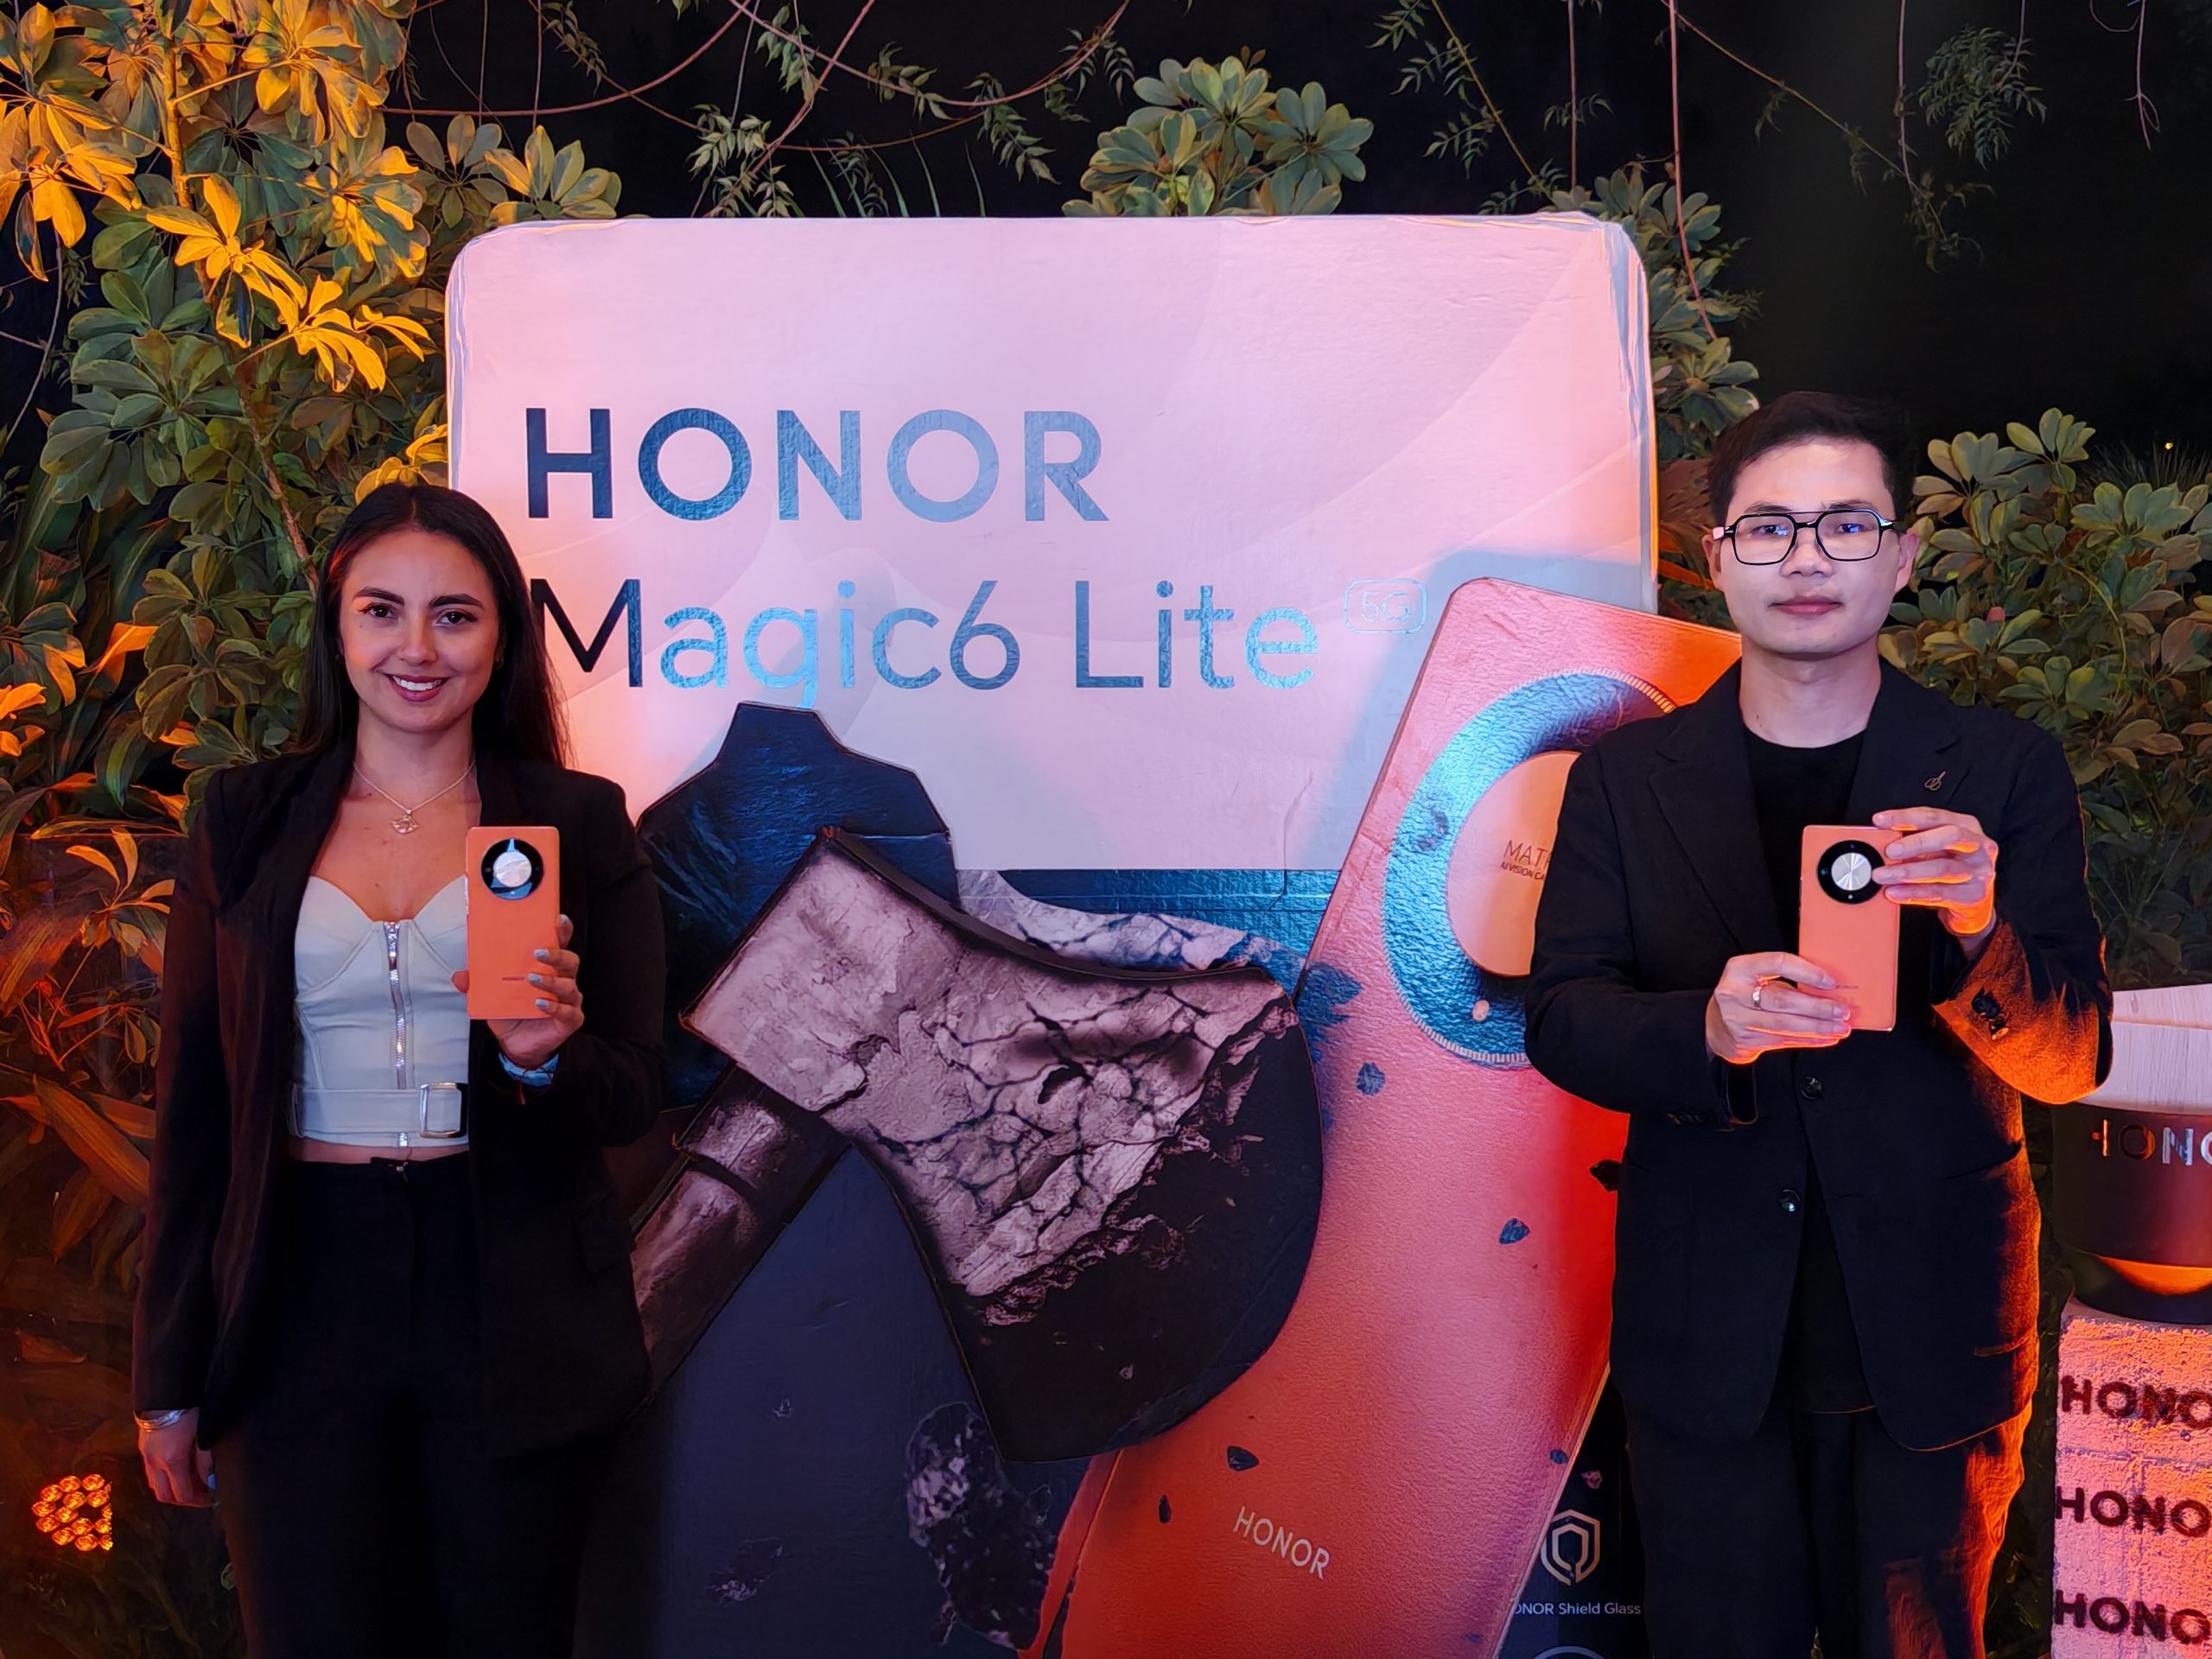 HONOR lanza un nuevo smartphone con tecnologías de resistencia sin comparación, el HONOR Magic6 Lite